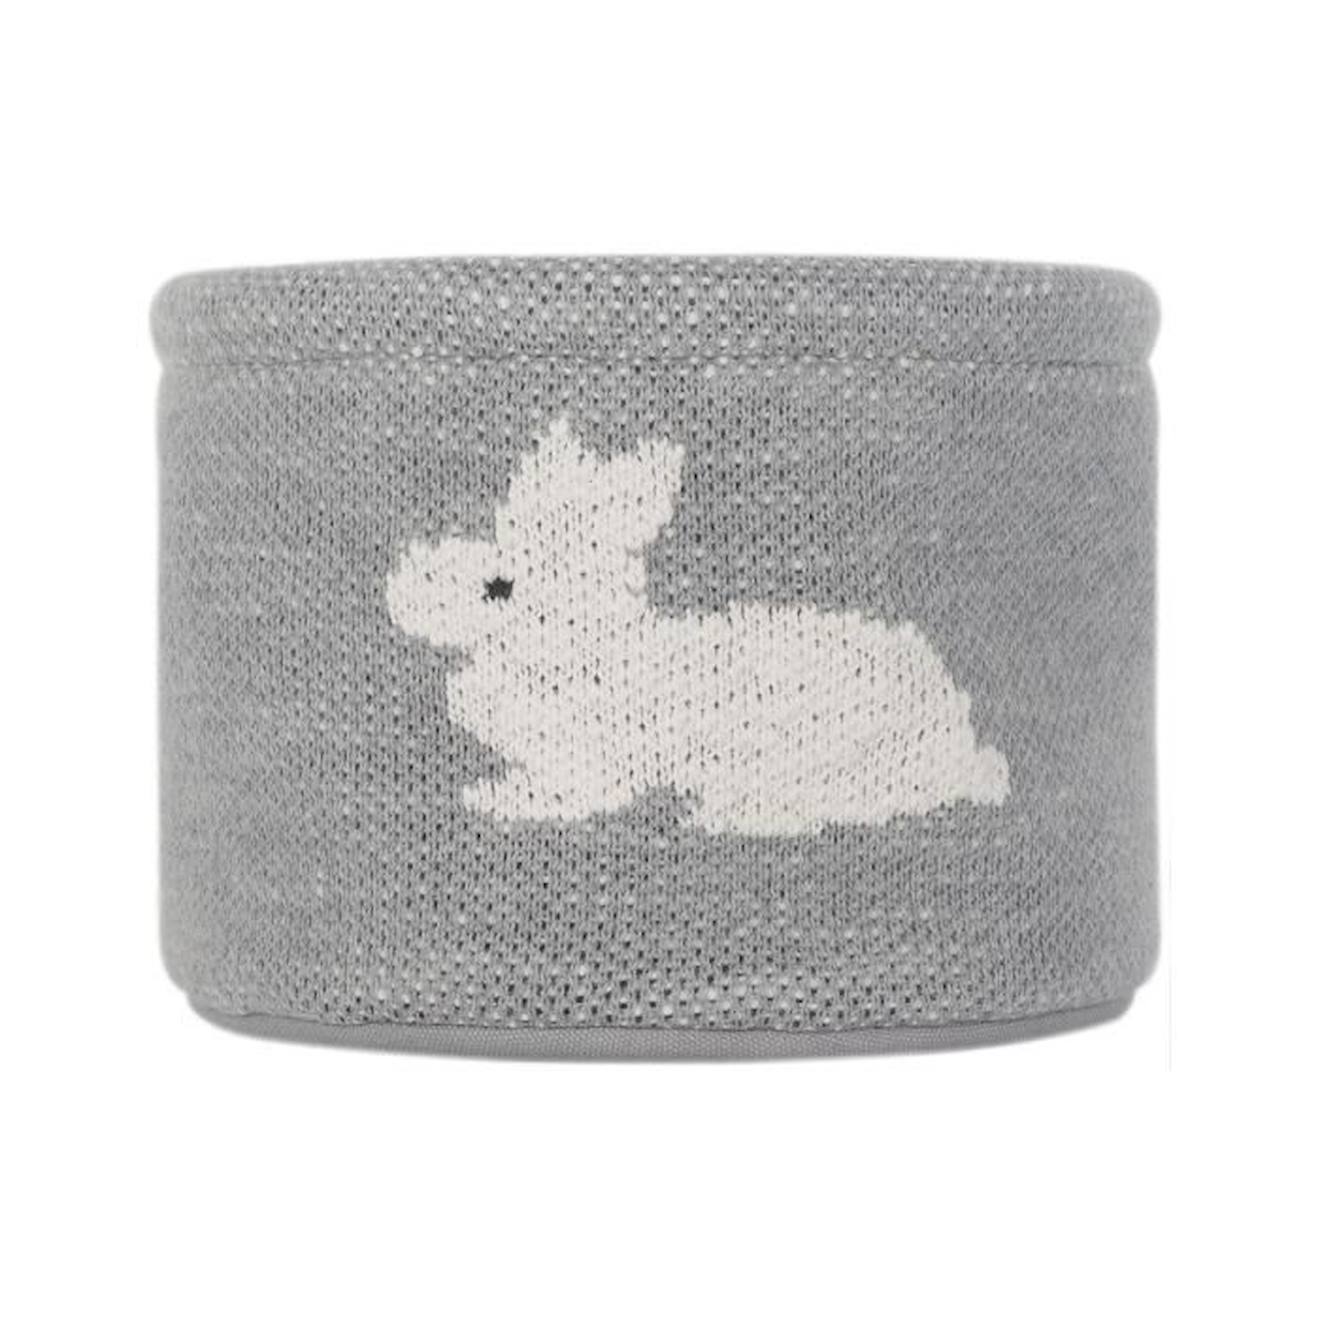 Petit panier de rangement gris motif lapin 100% coton gris - Kindsgut